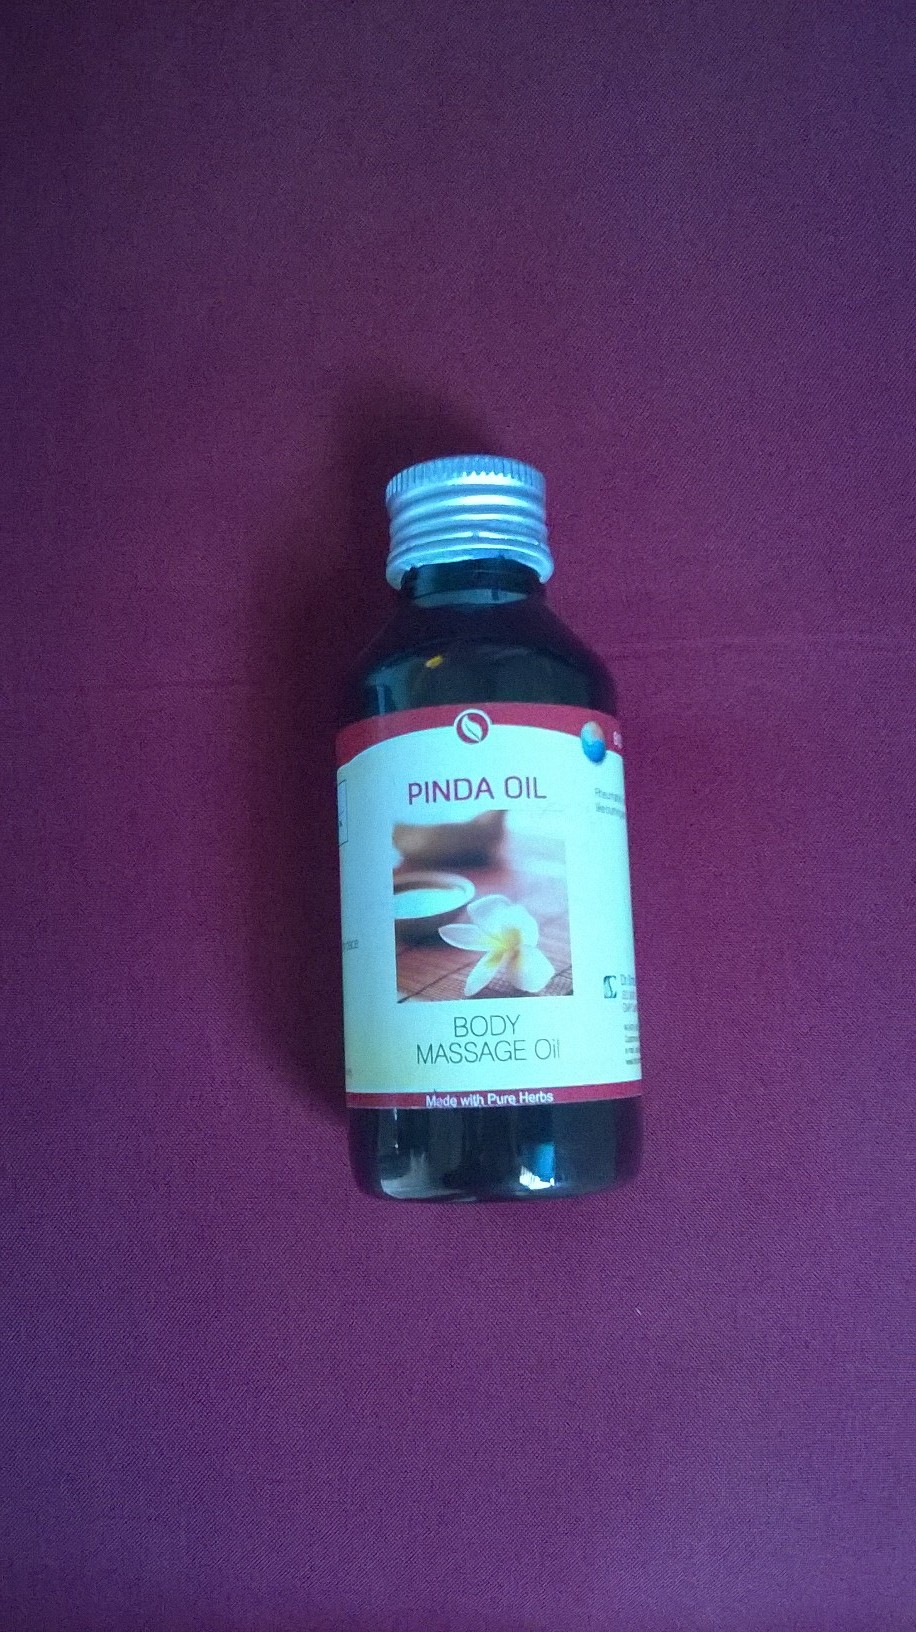 Pinda Oil